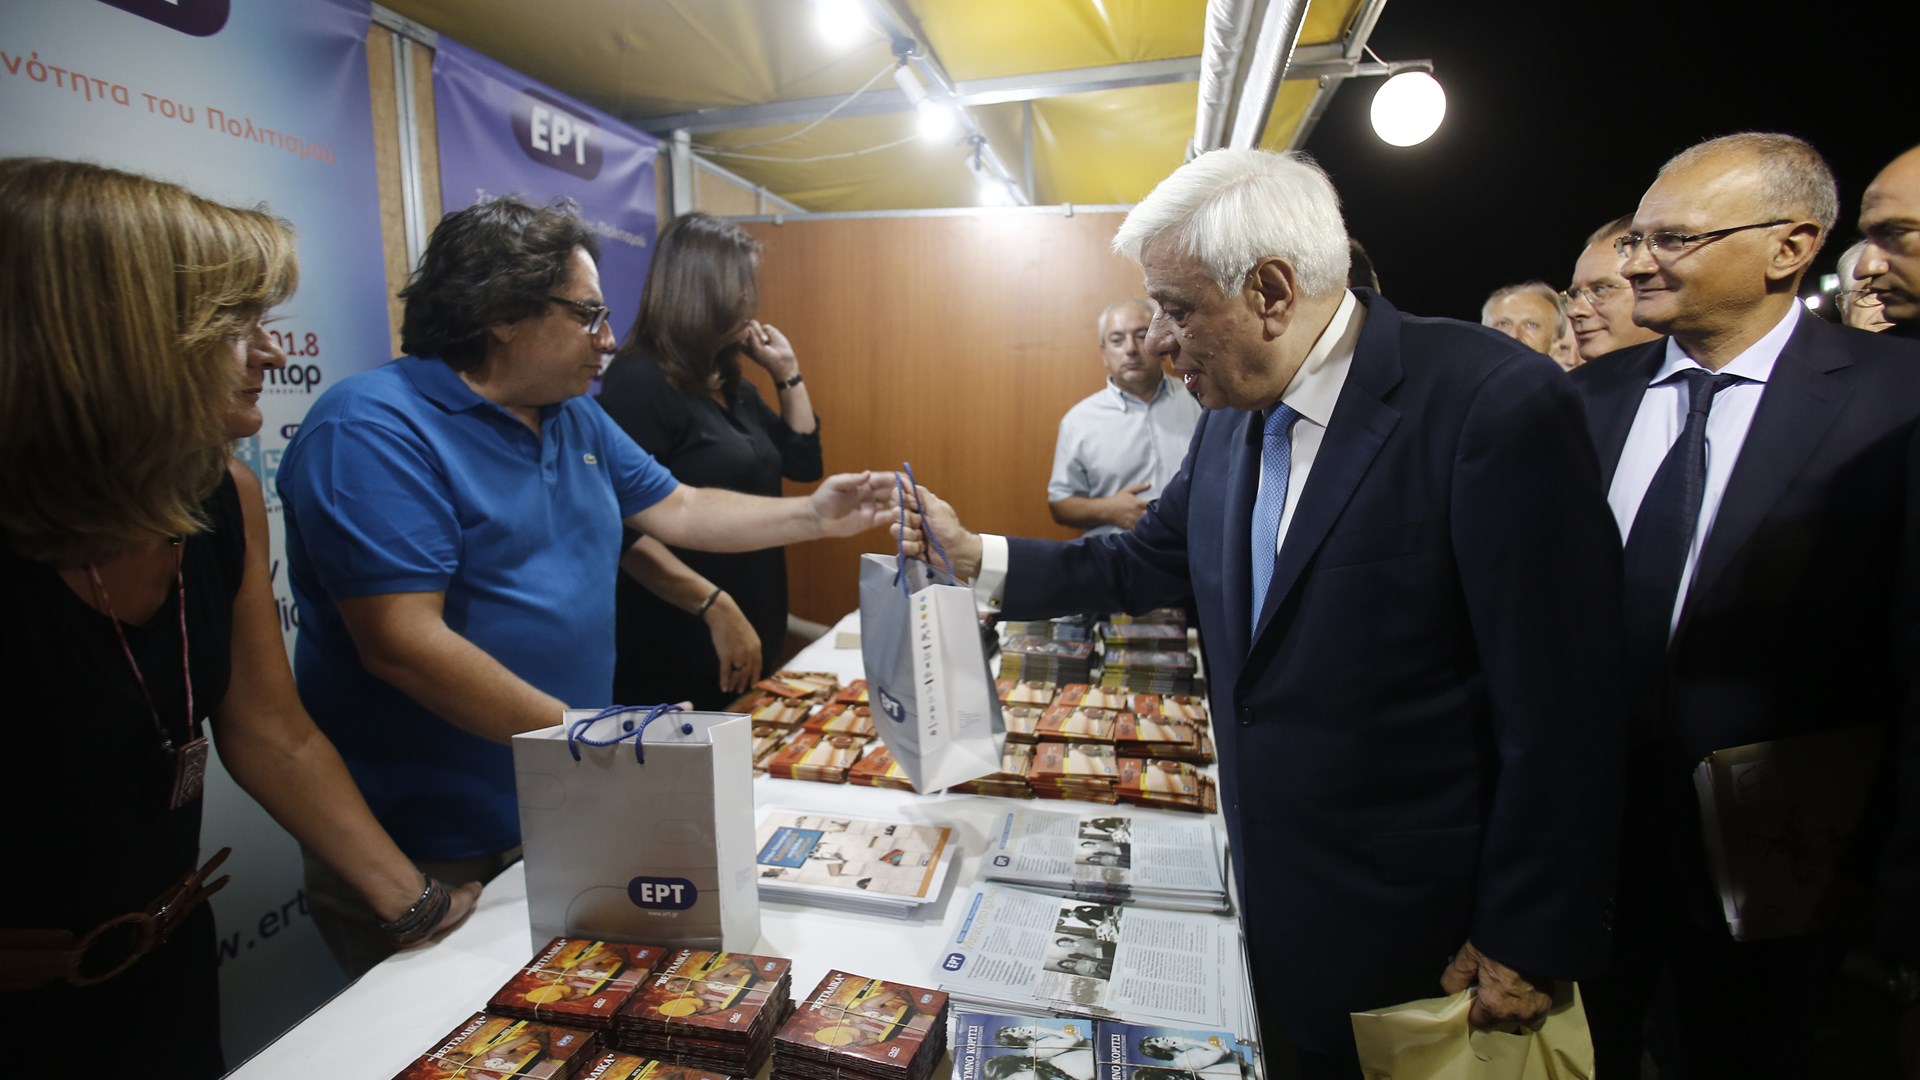 Παυλόπουλος: Το βιβλίο «σφυρηλατεί» μια αναντικατάστατη υλική σχέση με τον αναγνώστη